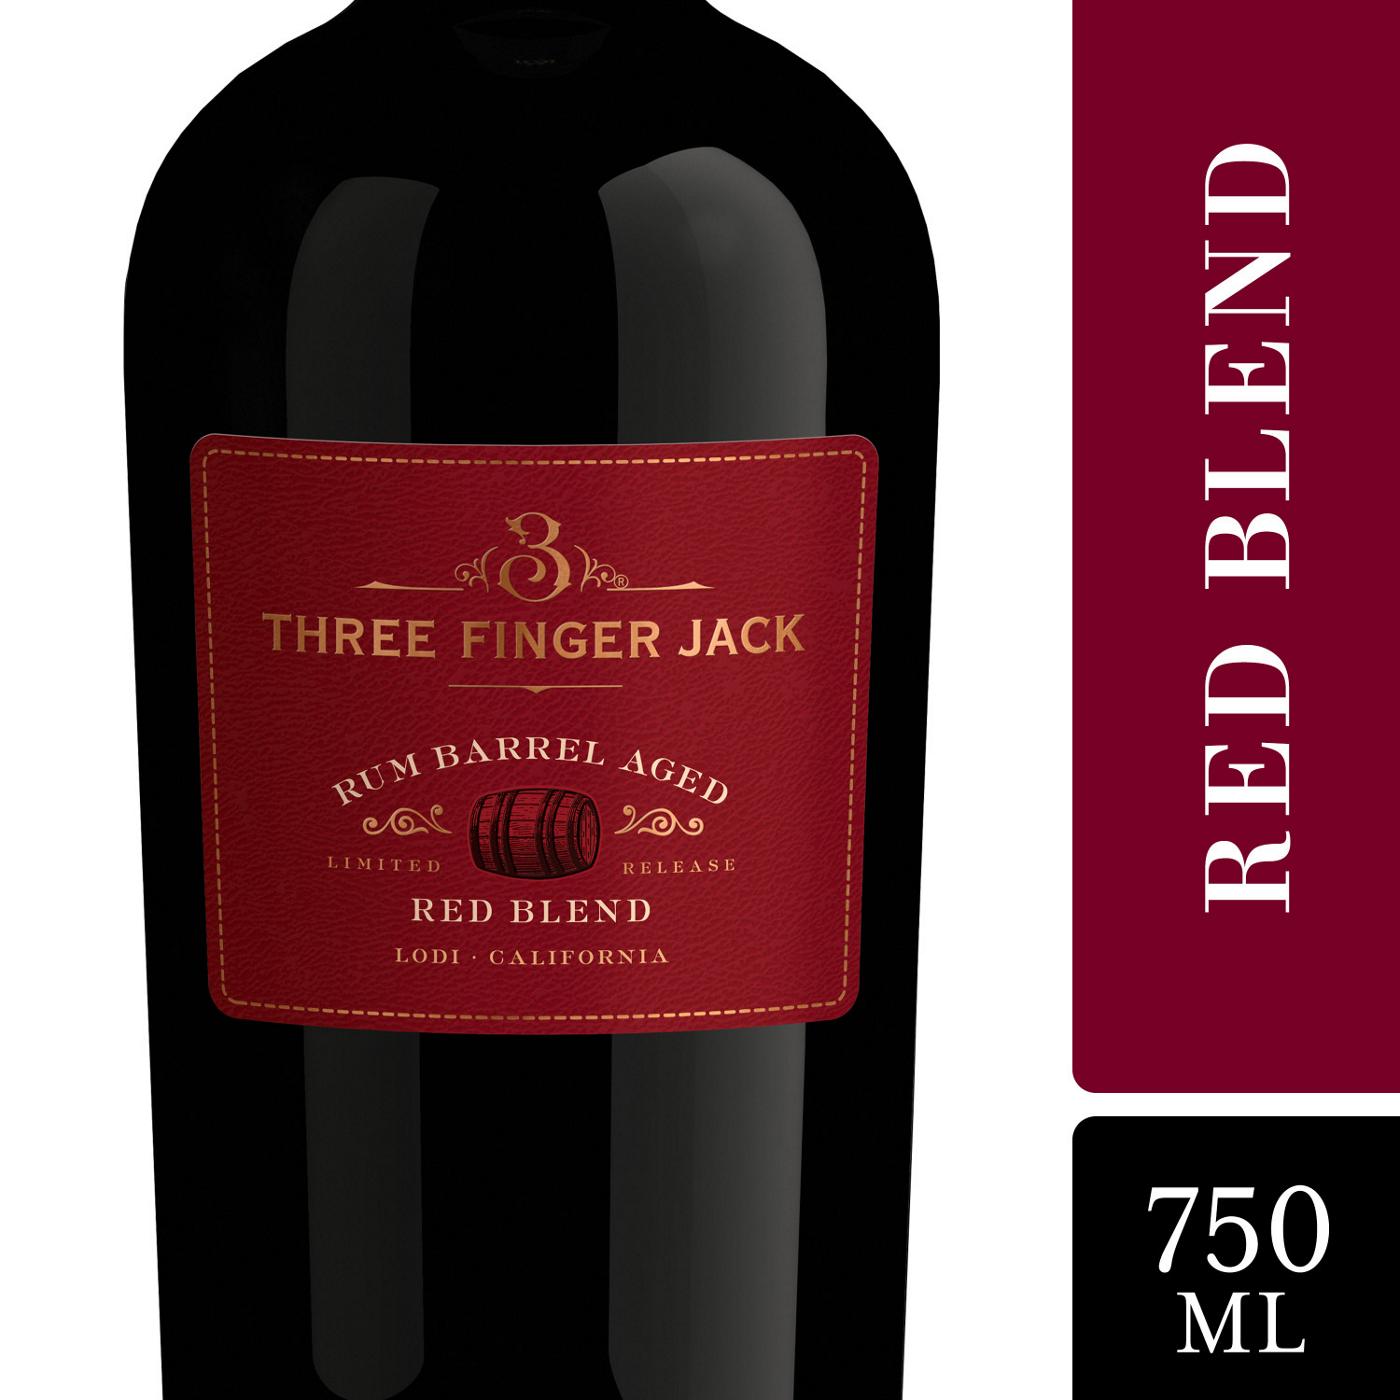 Three Finger Jack Rum Barrel Aged Red Blend; image 4 of 5